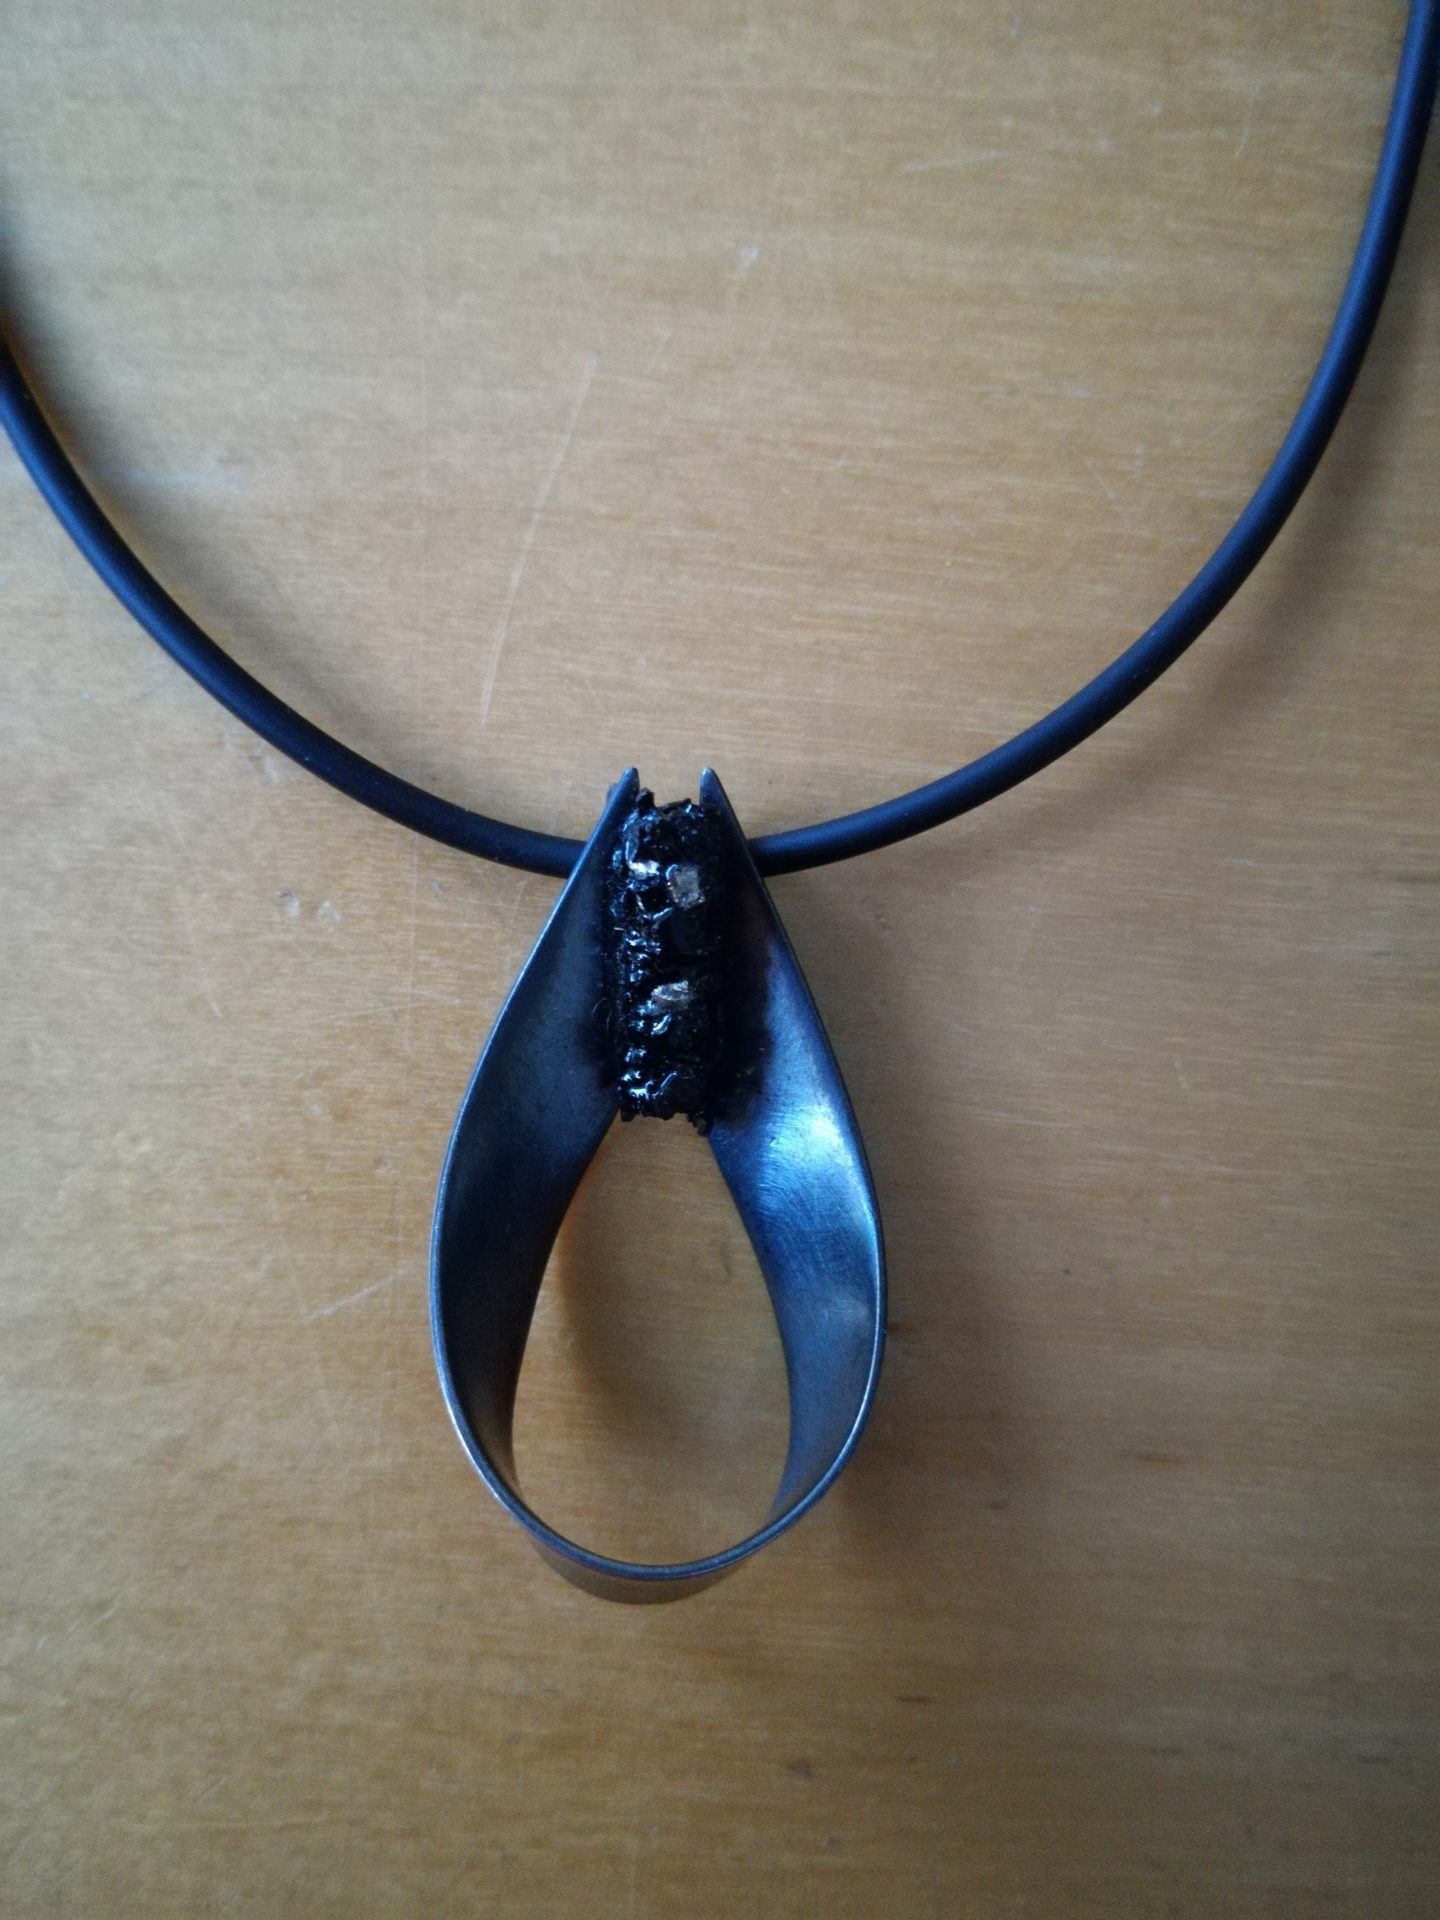 In zilver gesmeede zwarte druppel met koker van tourmalijn zwart afgewerkt met een caoutchouc collier.